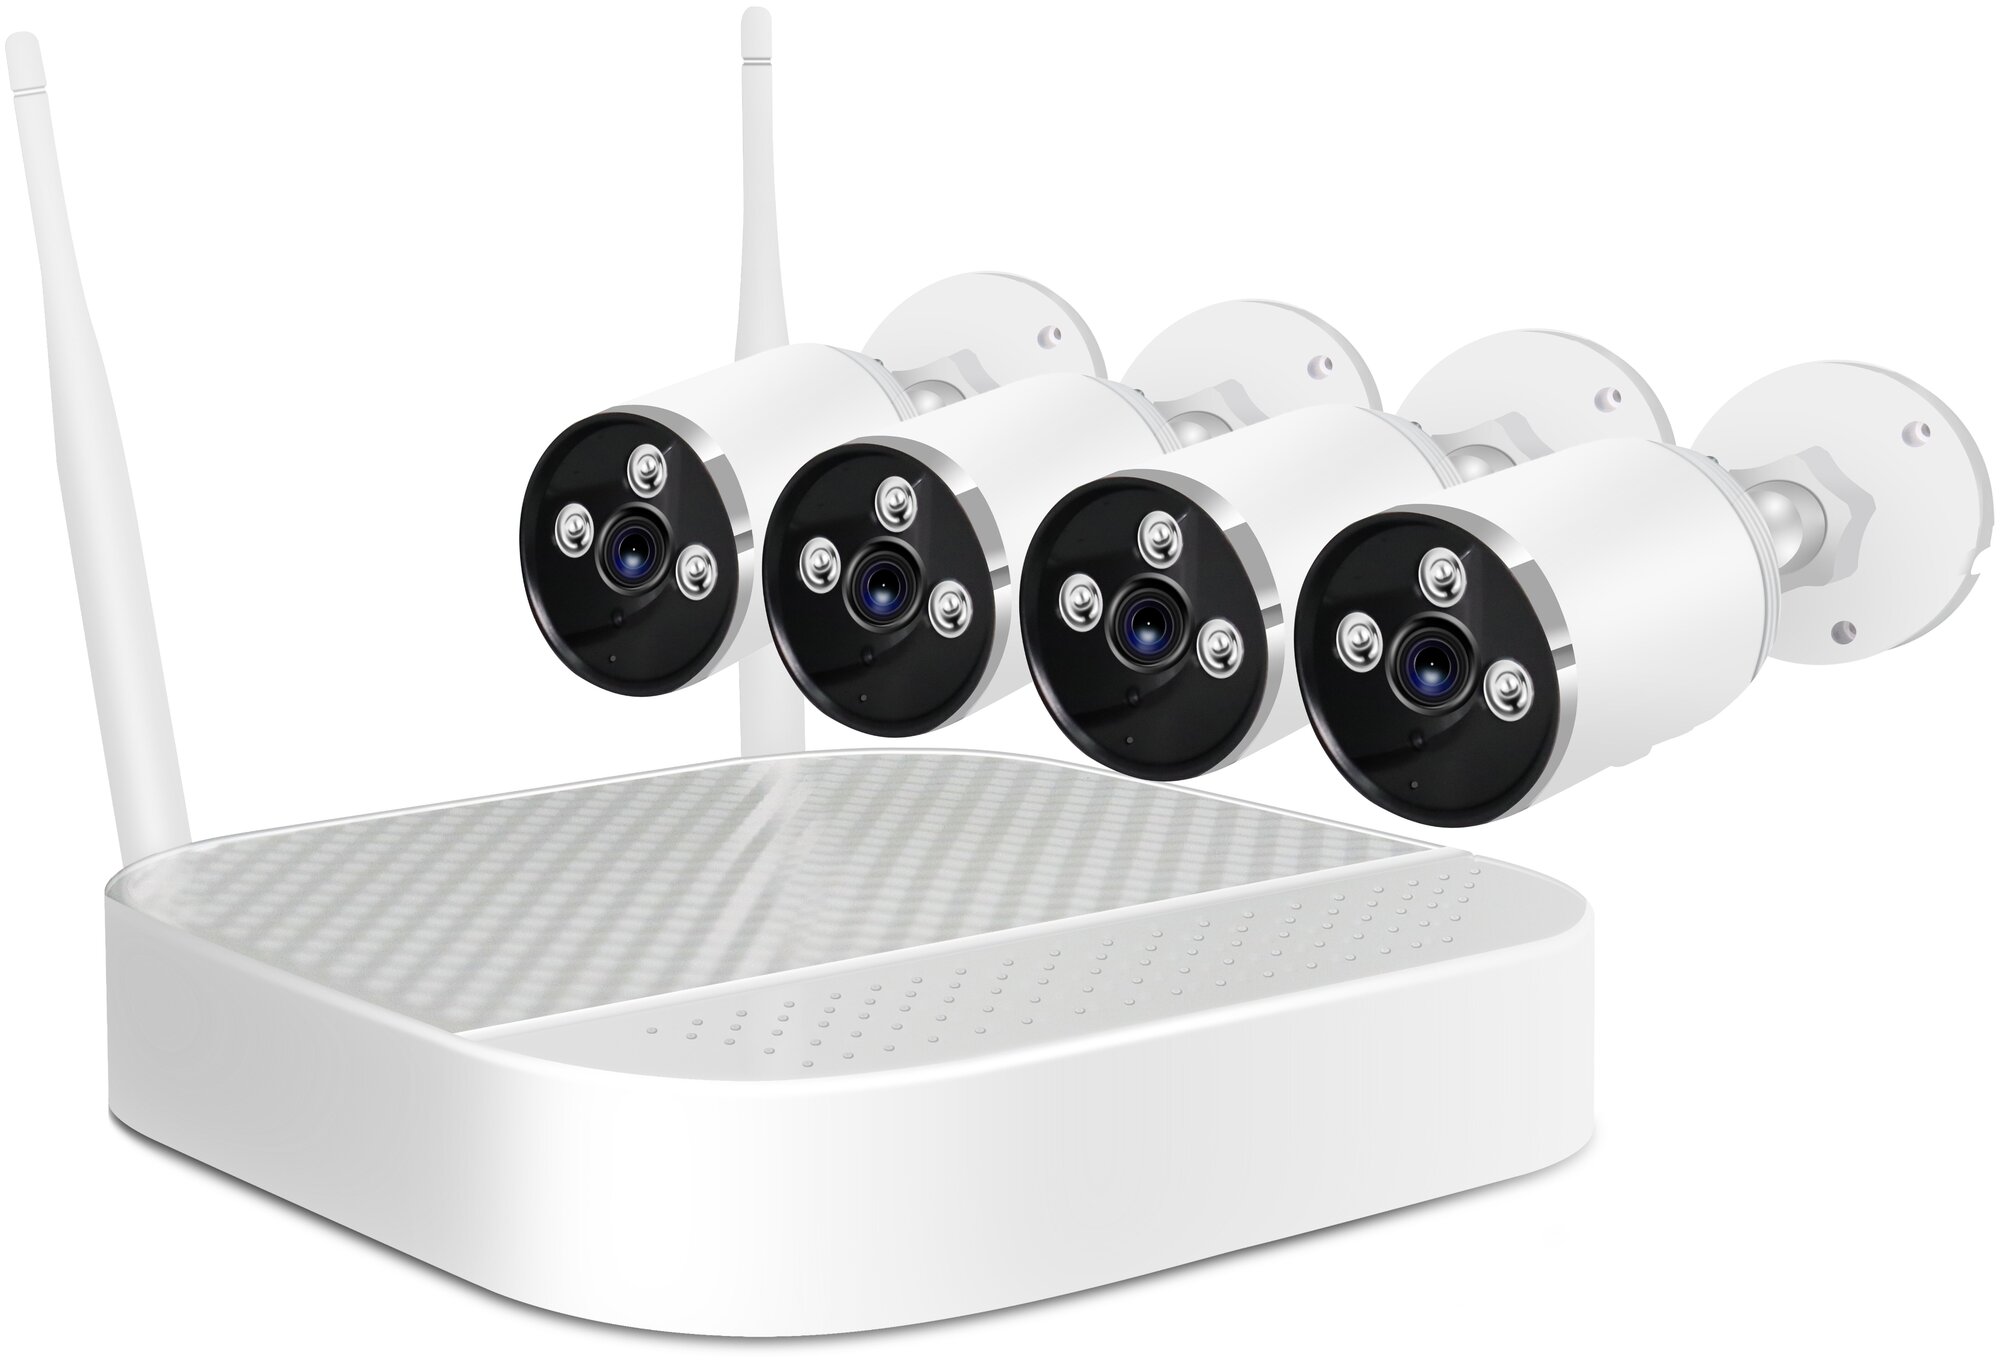 Система видеонаблюдения для дома Kvadro Vision Cloud-03-4 (P1592RU) - беспроводной комплект наблюдения на 4 камеры с записью в облако